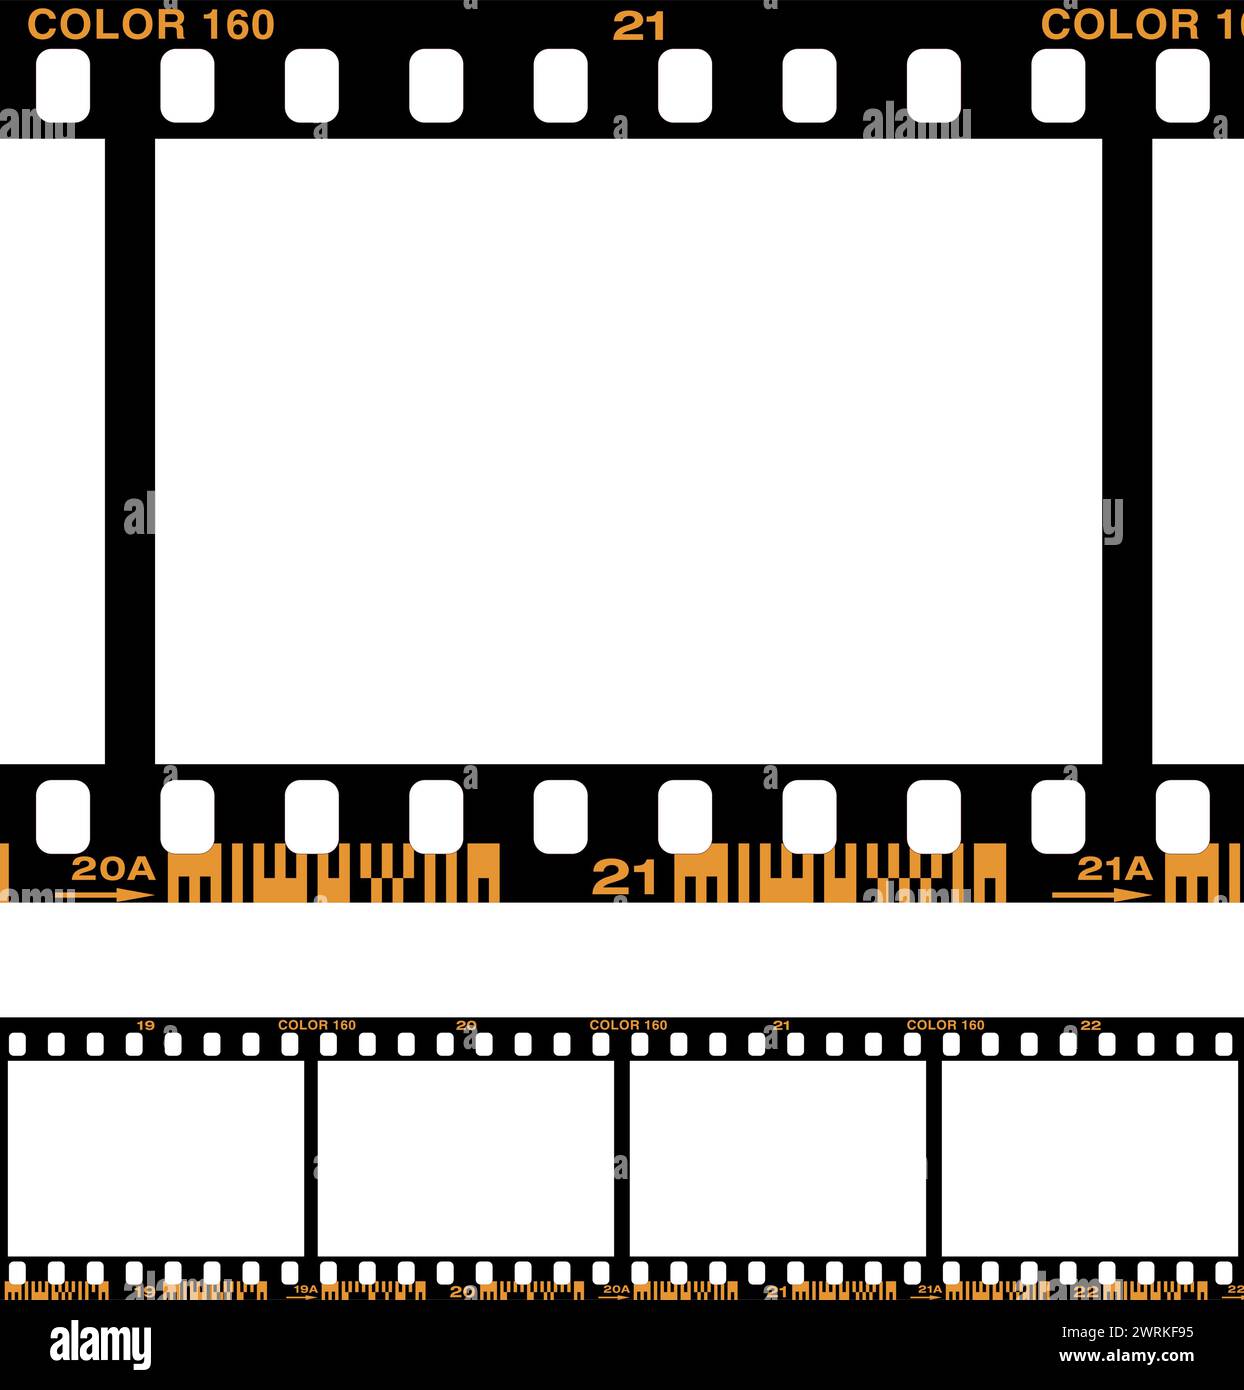 Illustrazione vettoriale del bordo della pellicola fotografica analogica con codici a barre Illustrazione Vettoriale